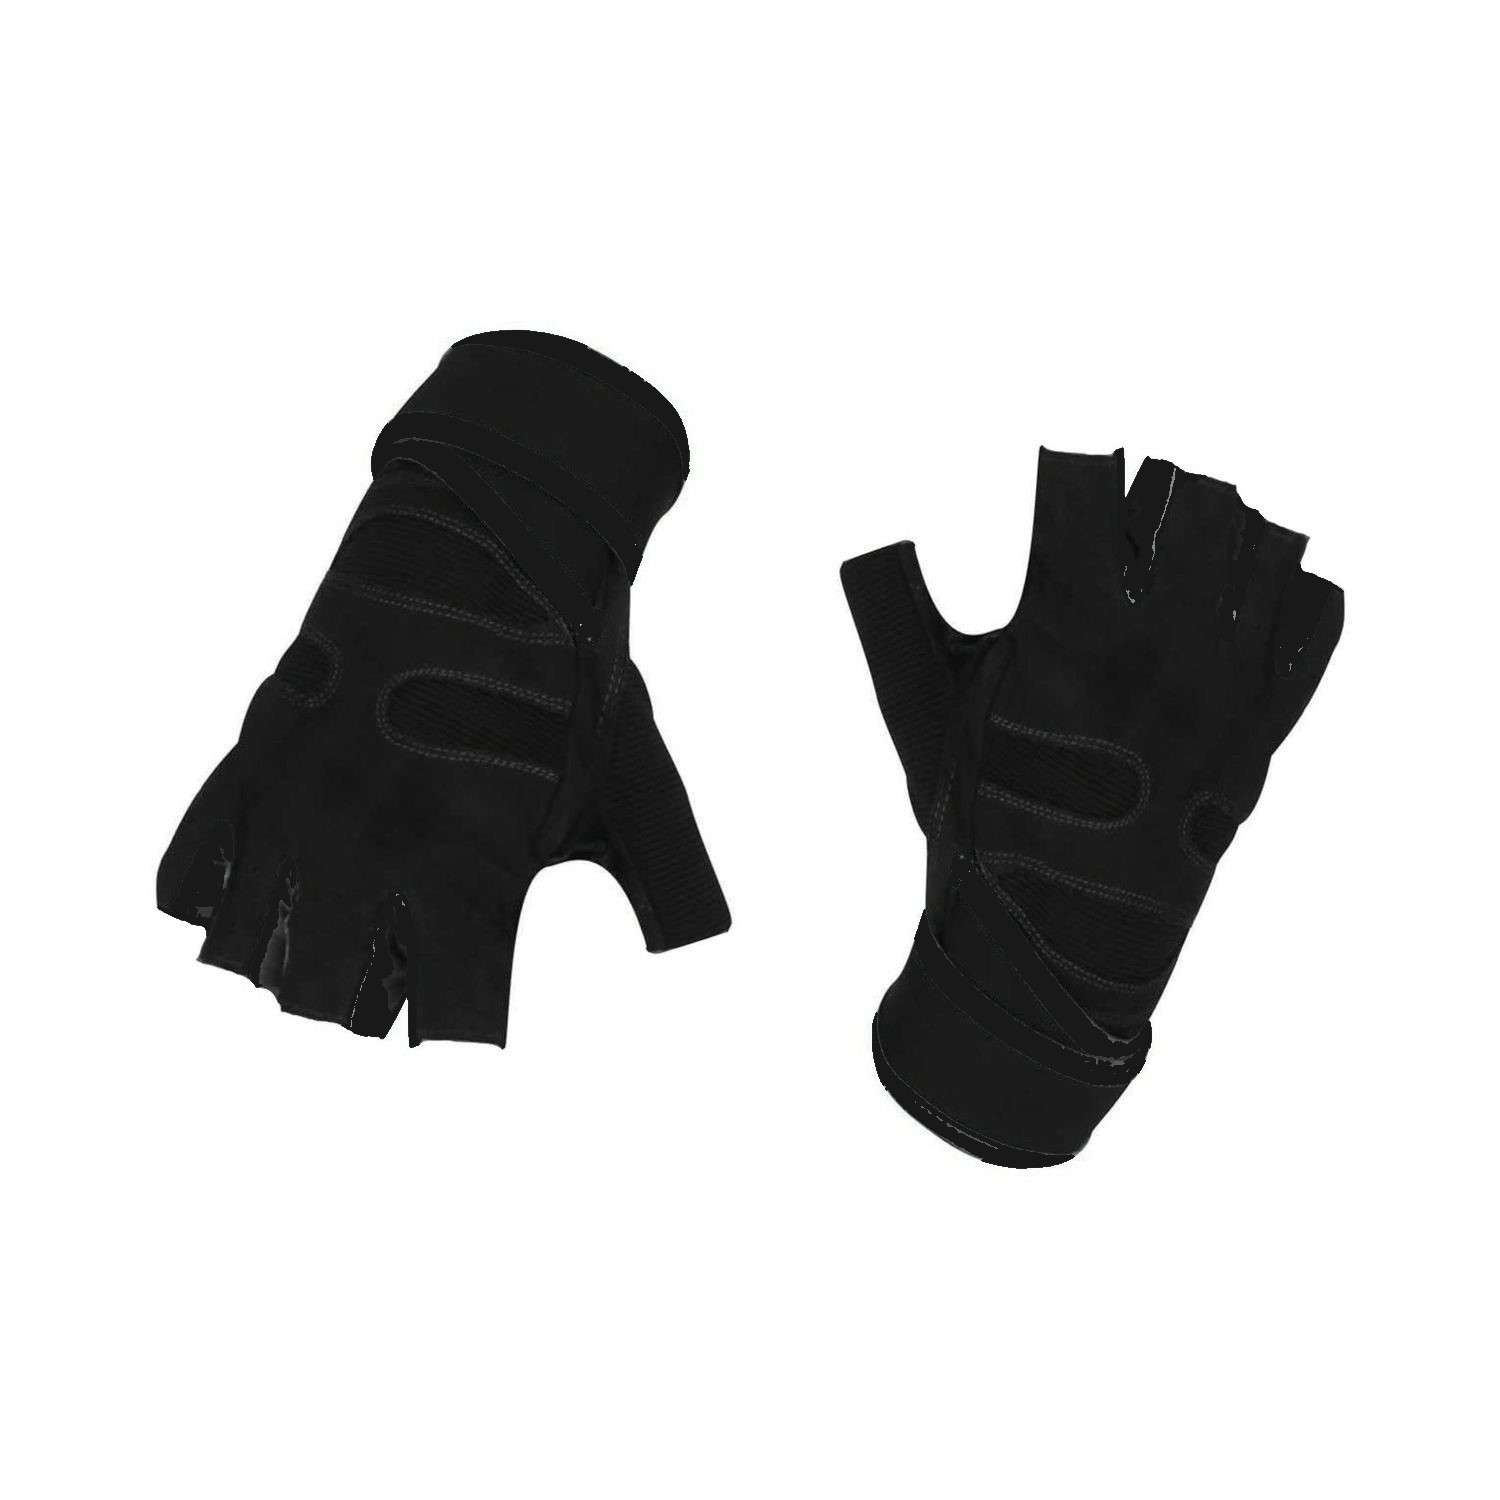 Нейлоновые перчатки NPOSS противоскользящие черные размер XL - фото 1